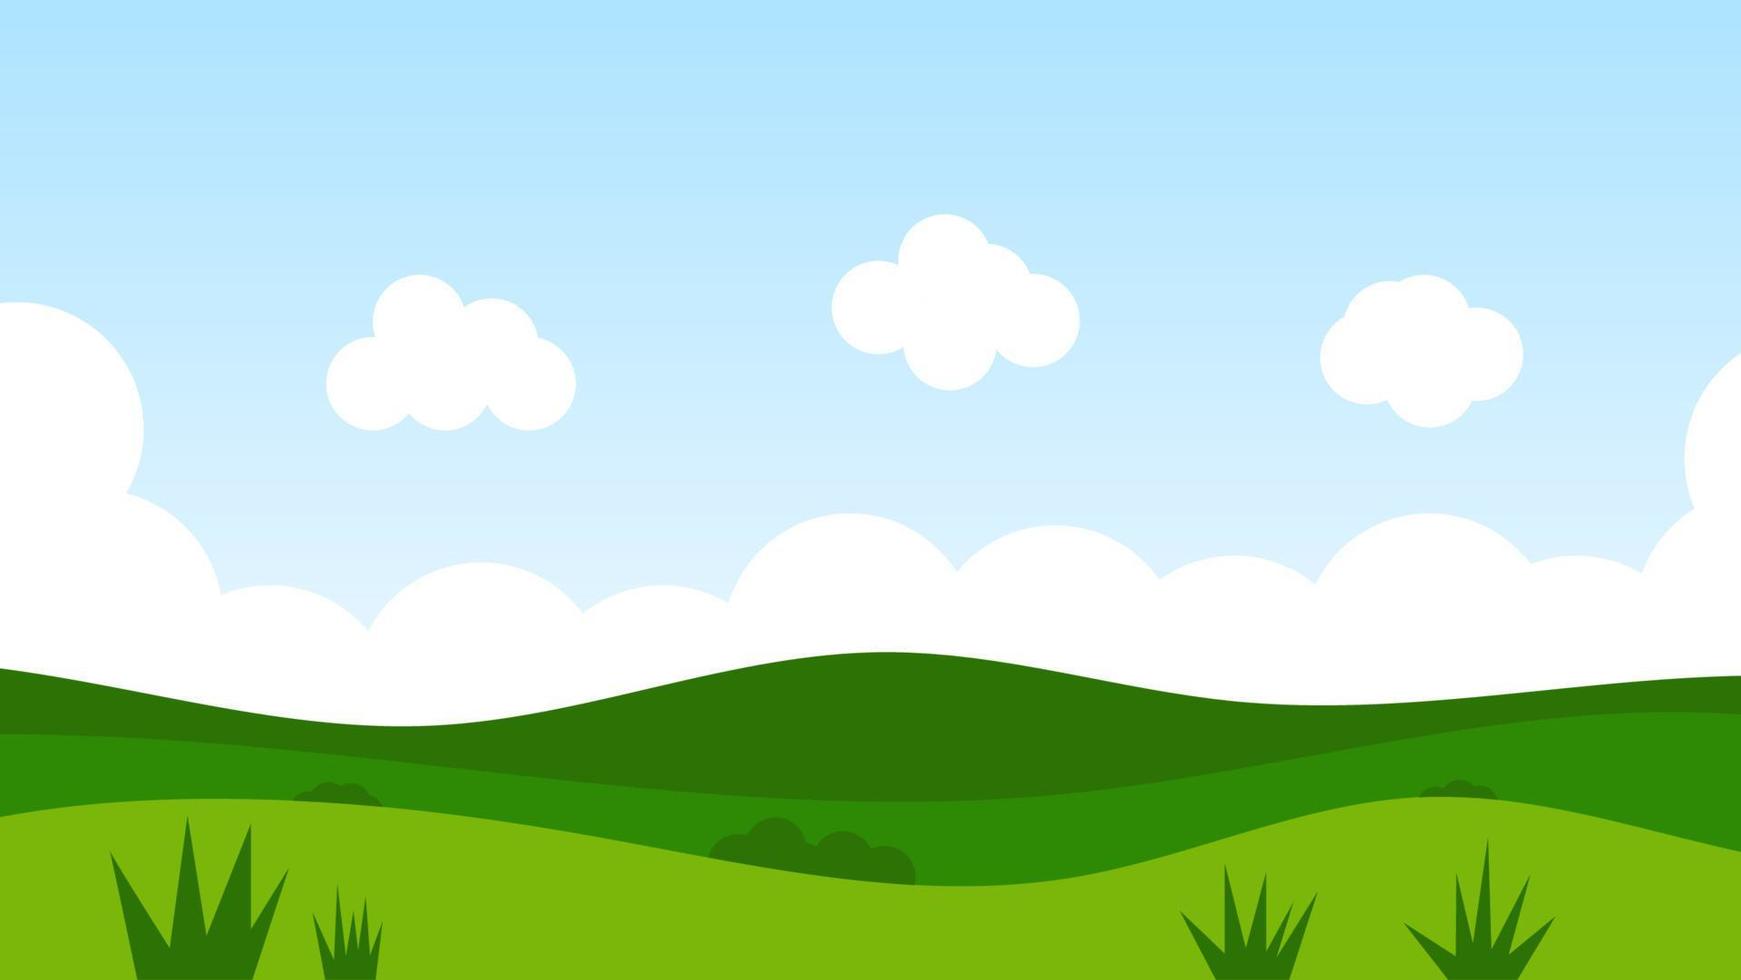 escena de dibujos animados de paisaje con árboles verdes en las colinas y nubes blancas esponjosas en el fondo del cielo azul de verano vector